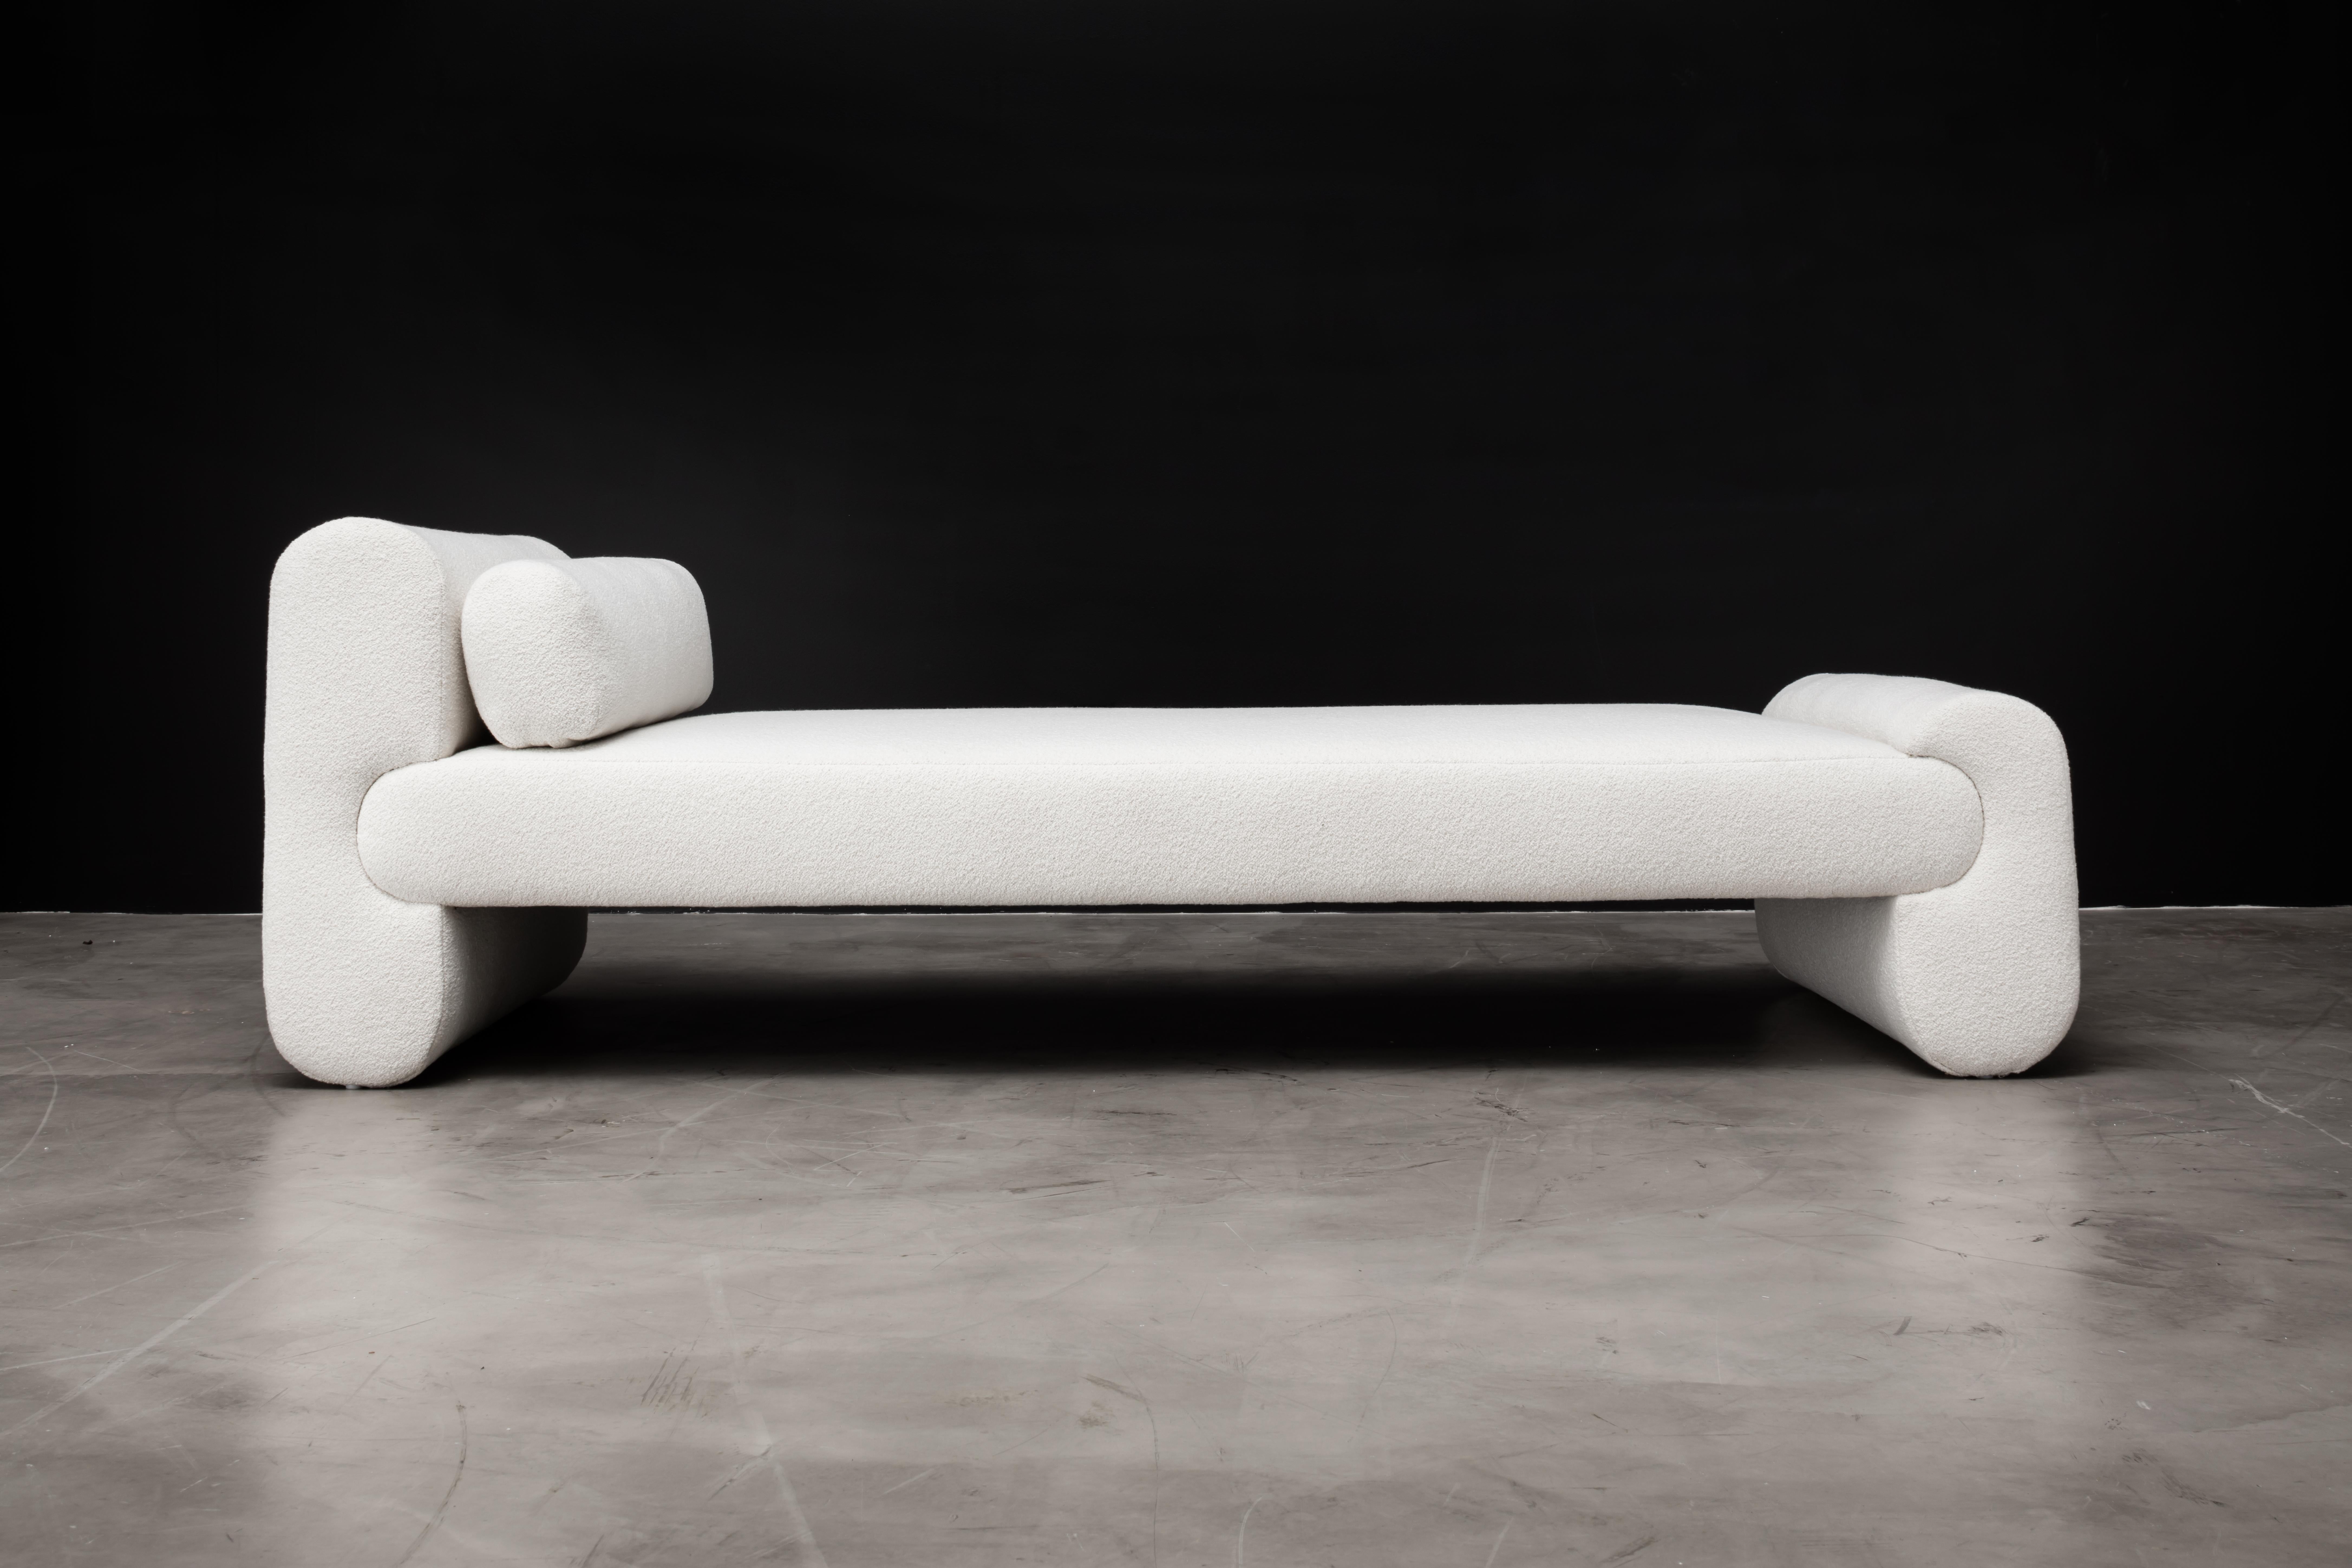 Voici le lit de jour Asym, un meuble étonnant conçu pour ajouter élégance et sophistication à votre espace de vie. Avec ses éléments de design asymétriques, ce lit de jour est à la fois simple et sophistiqué, avec une tension déséquilibrée qui crée